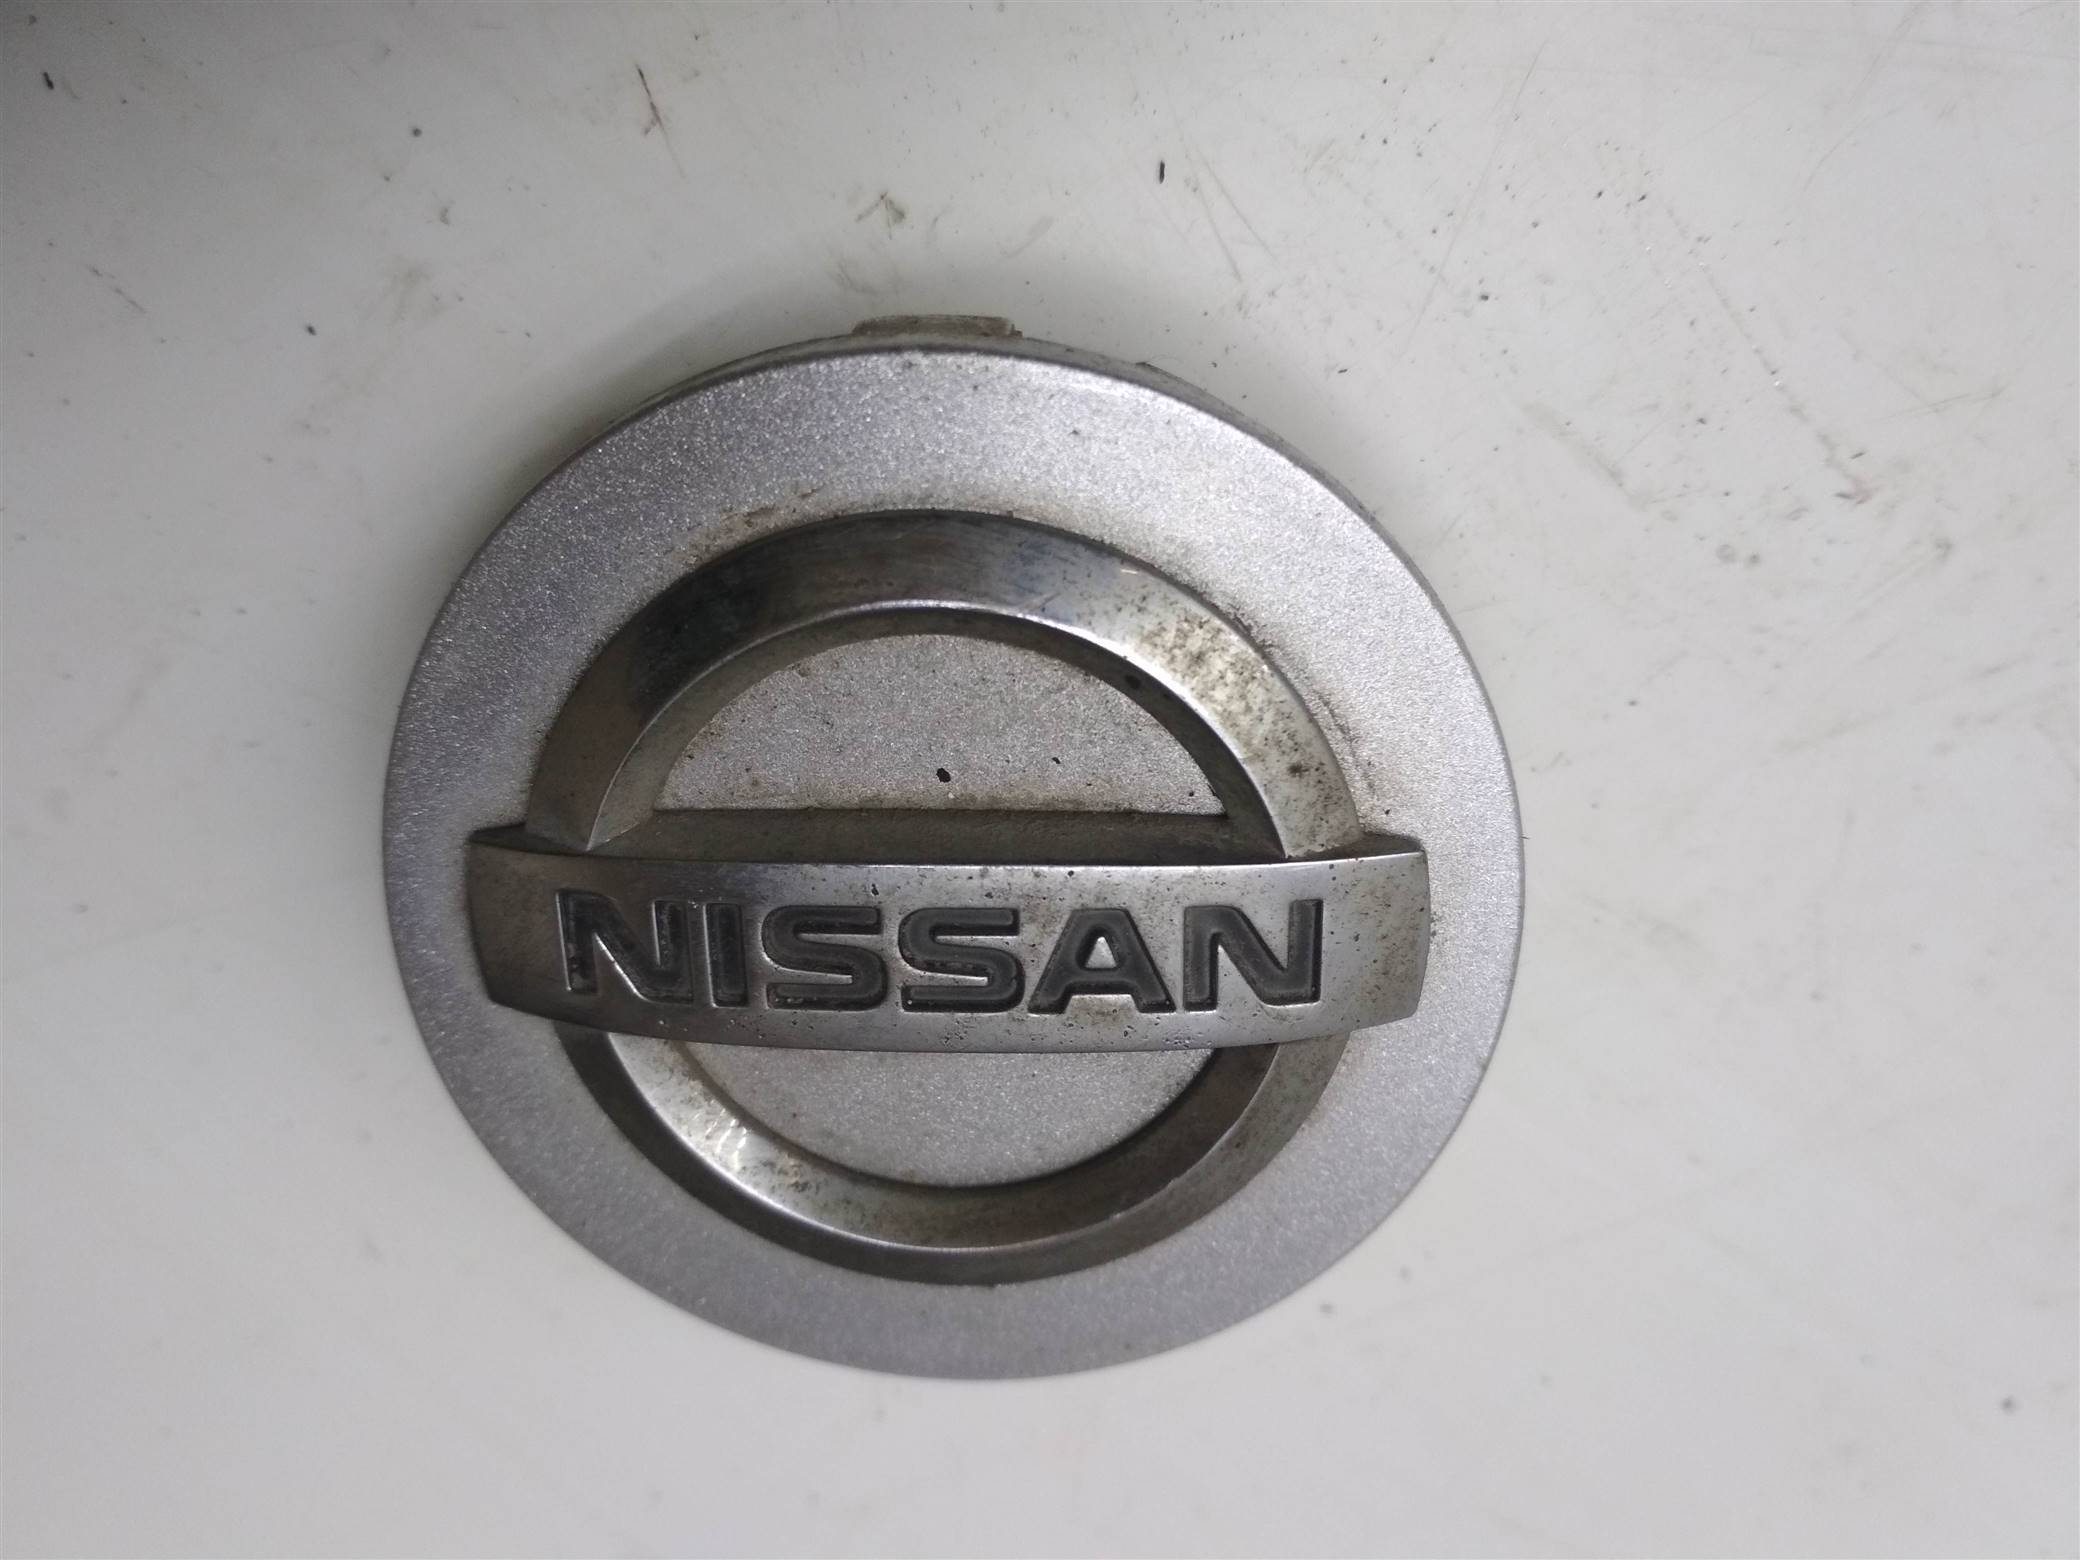 Колпаки на альмеру. Nissan Almera g15 колпаки. Колпак диска Альмера g15. Колпак литого колеса Nissan Almera. Колпаки на диски Ниссан Альмера 2013.